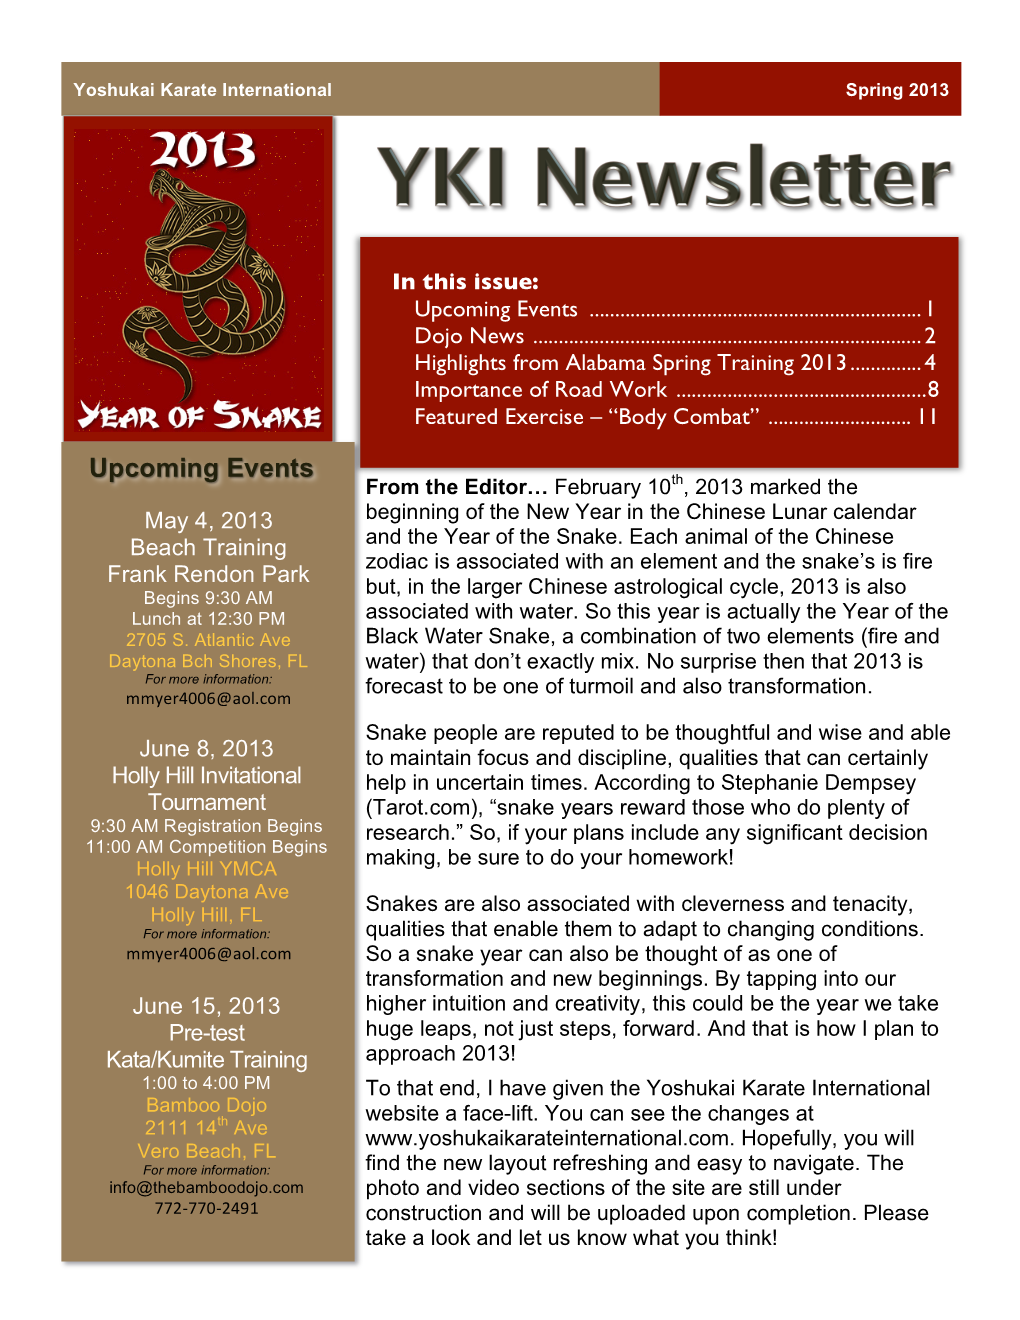 YKI Newsletter 2013Q1